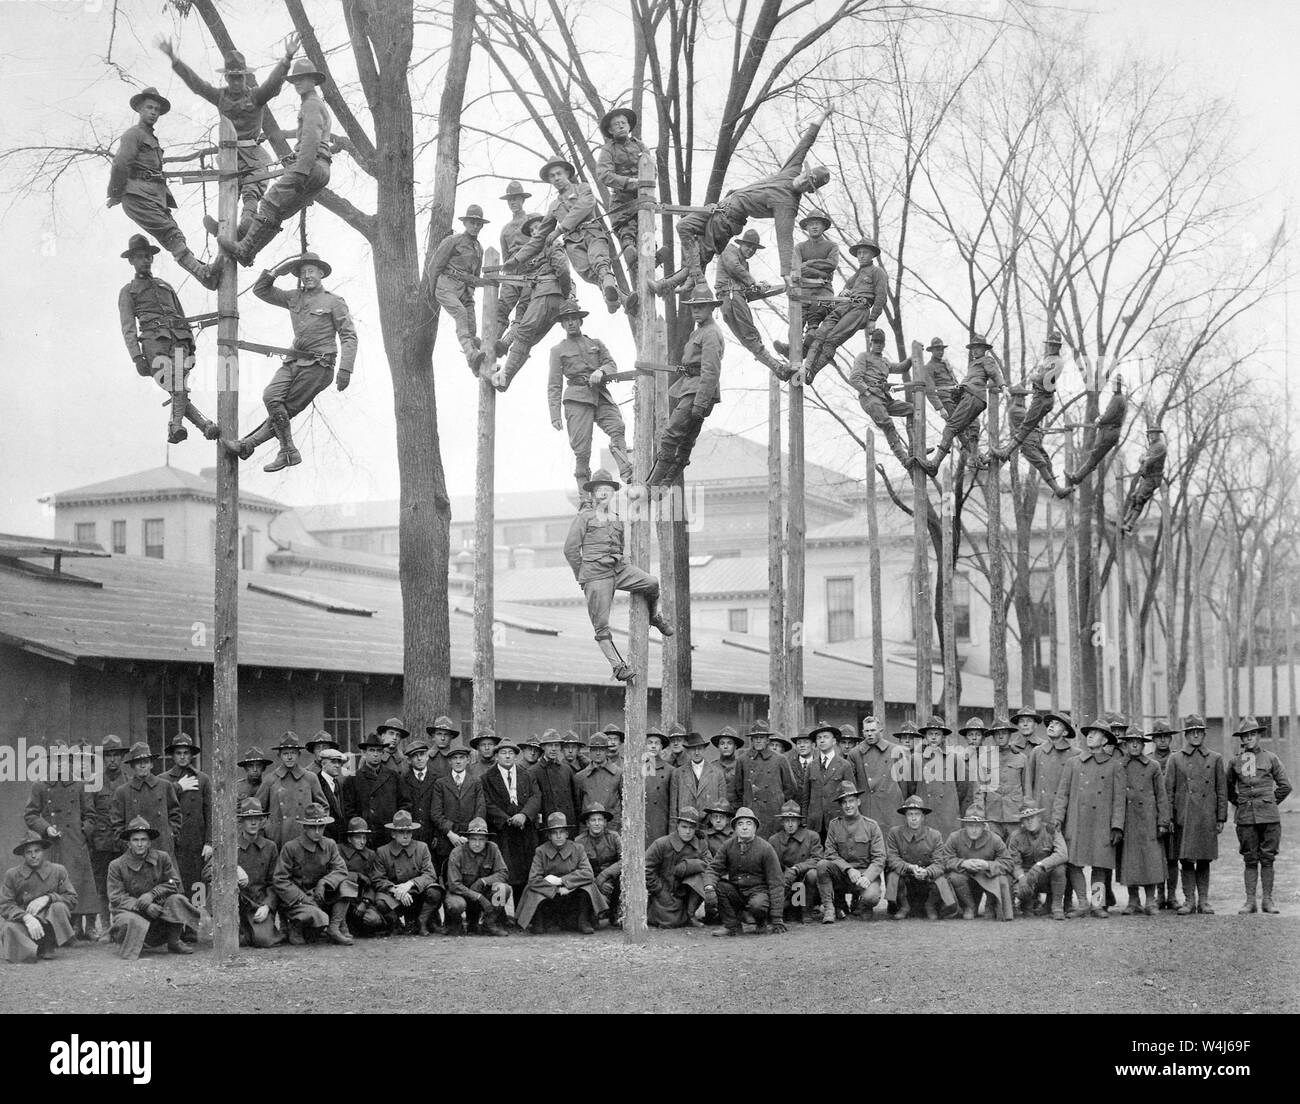 Formation professionnelle pour S.A.T.C. En classe Pole-Climbing au cours des électriciens, avec certains de leurs instructeurs. Université du Michigan., vers 1918 Banque D'Images